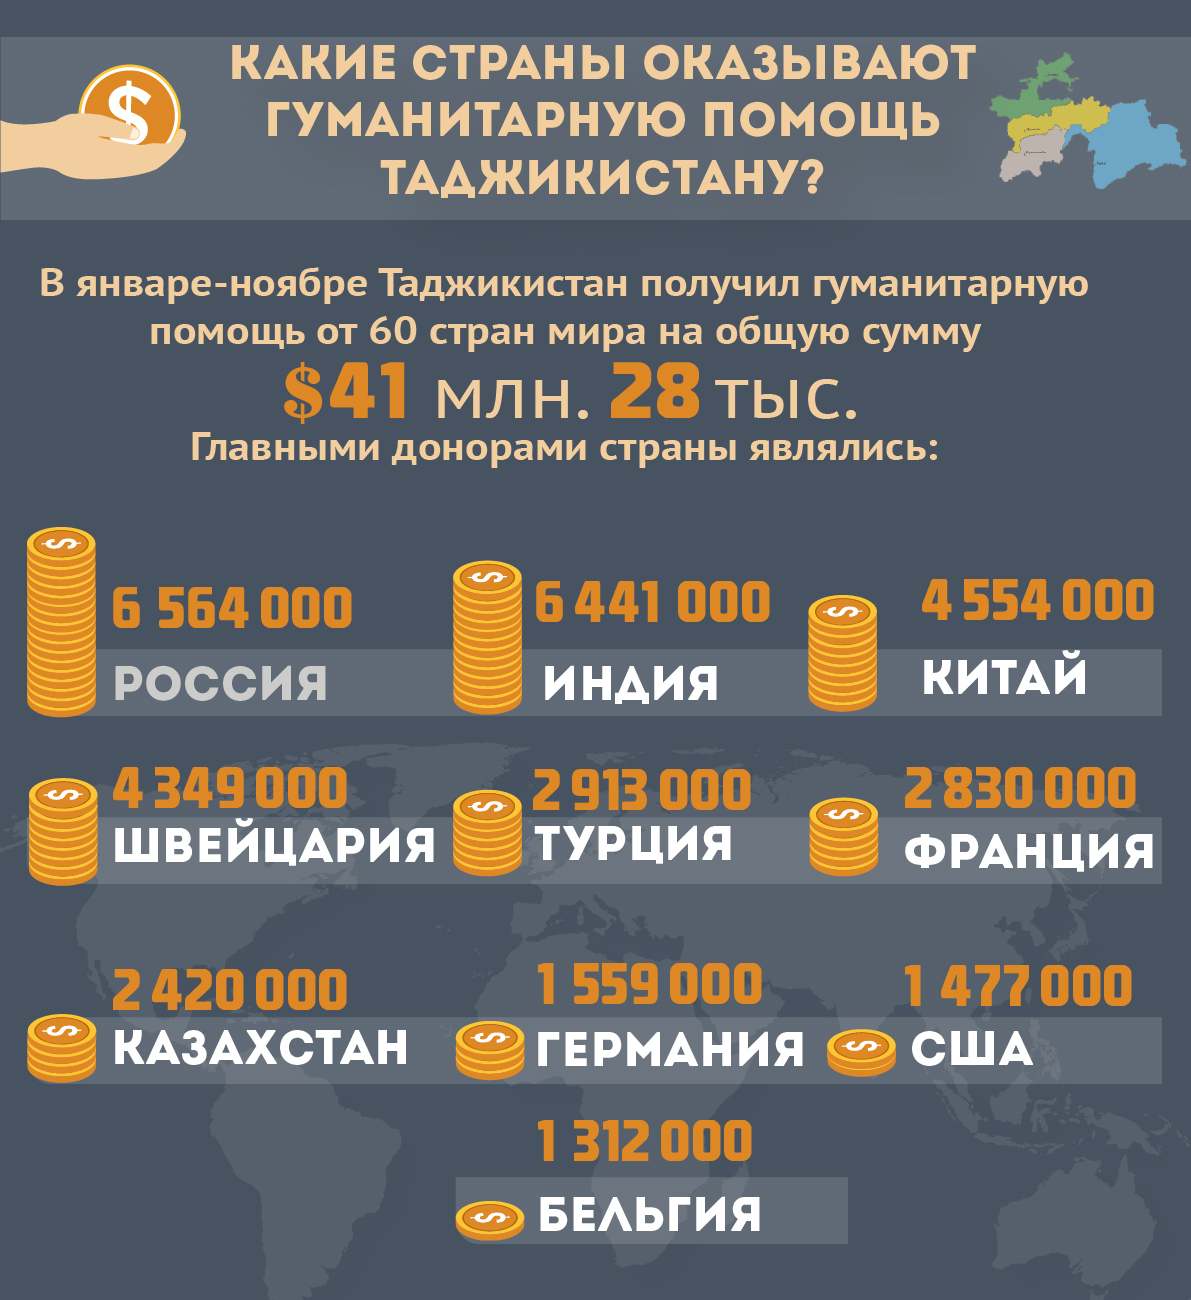 Таджики получают пенсию в россии. Страны Котове оказывали гуманитарную помощь. Какая Страна помогает Таджикистану. Какие страны поддерживают Таджикистан. Какие стране не признают Таджикистана.